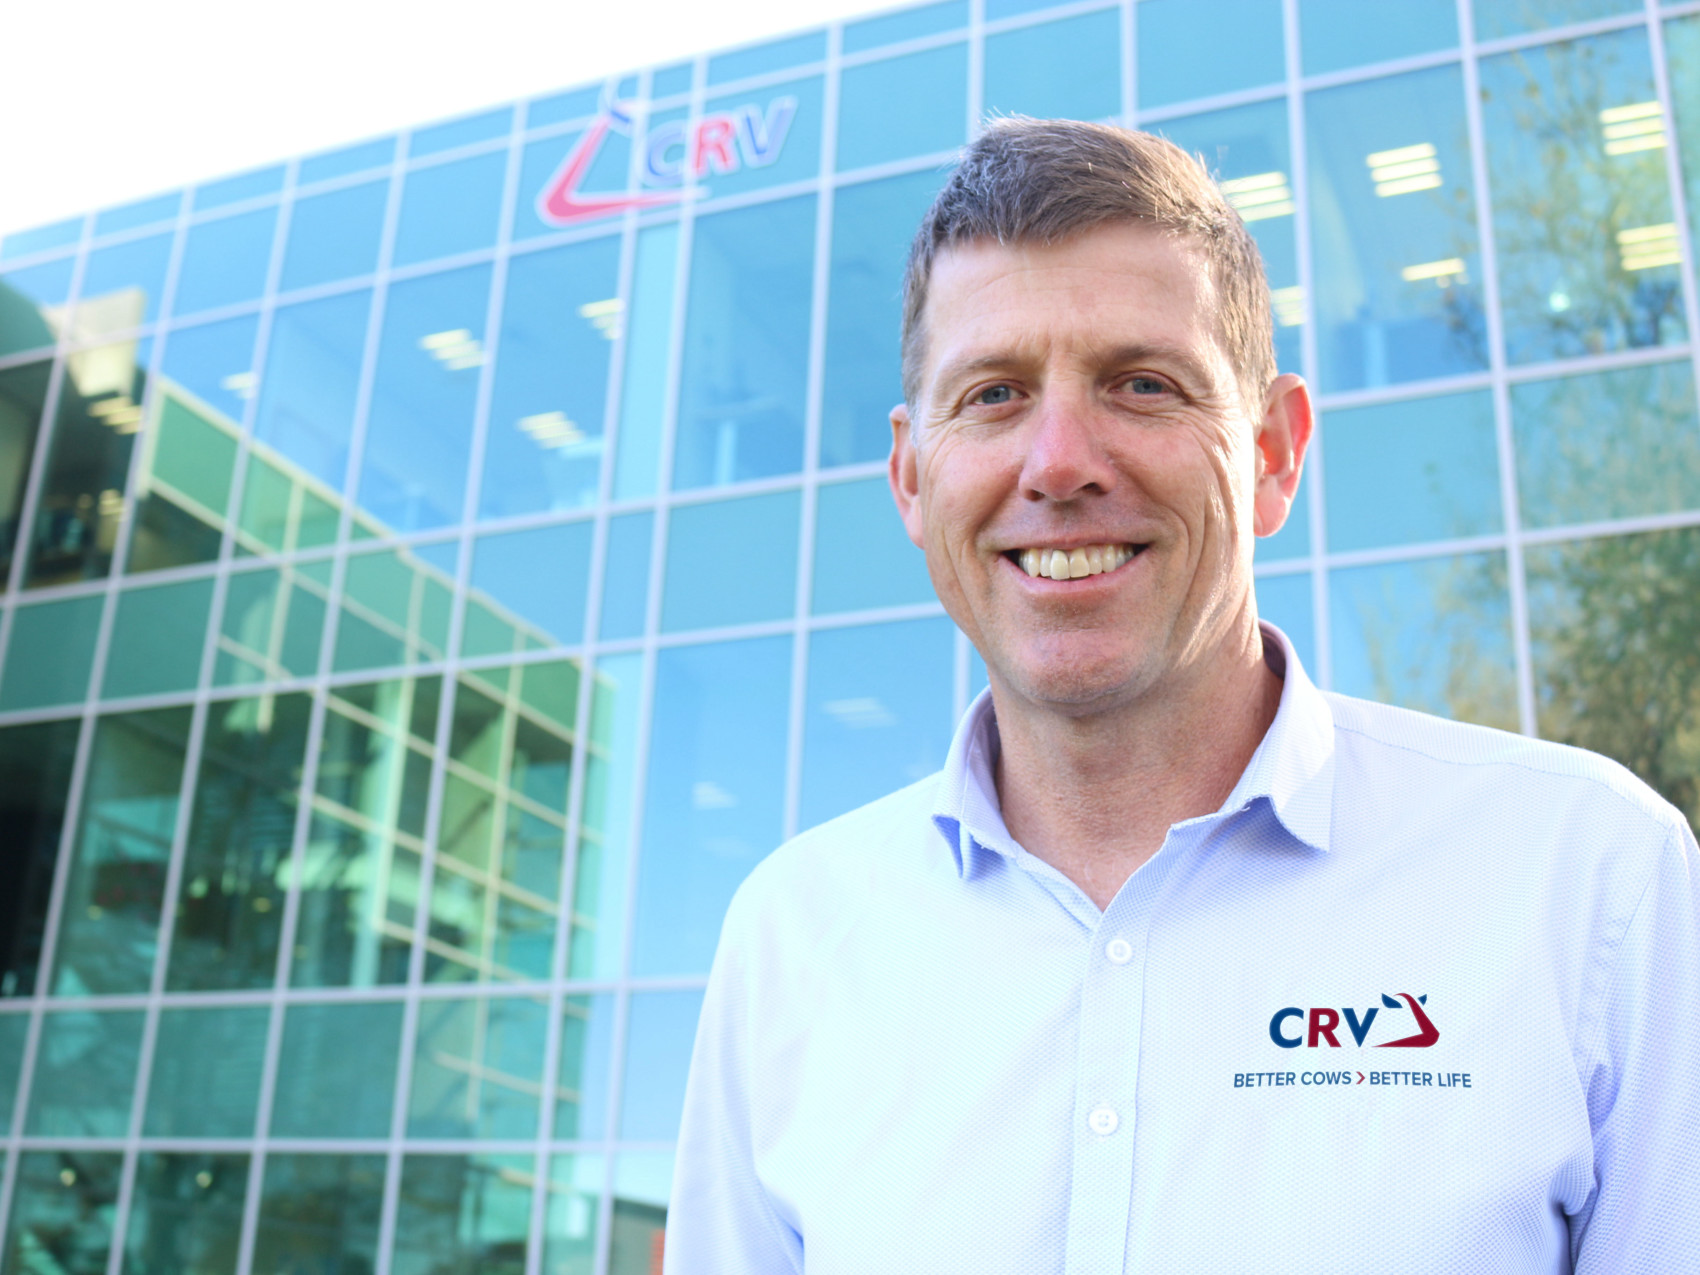 CRV-Hauptgeschäftsführer Angus Haslett freut sich über den neuen Öffentlichkeitsauftritt und die Innovationskraft von CRV.